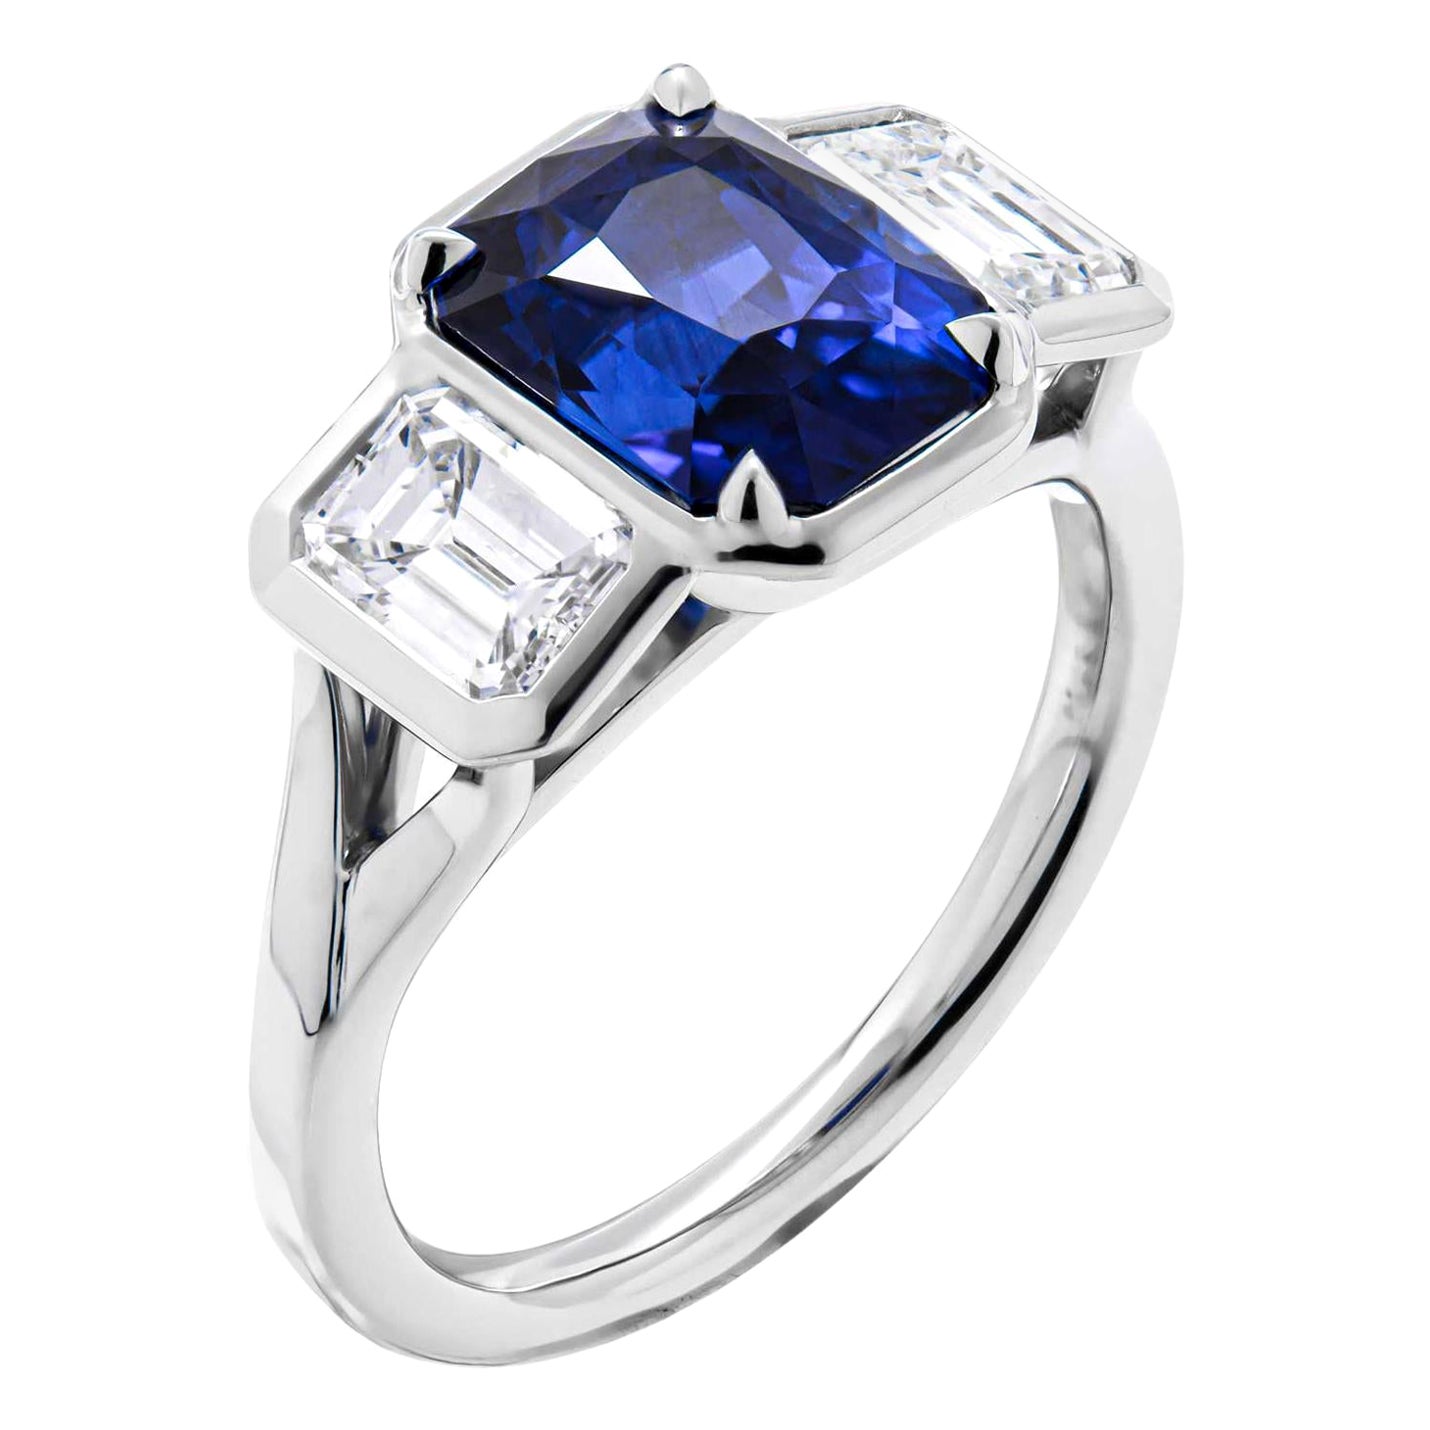 GIA-zertifizierter Ring mit 3 Steinen und 3,31 Karat blauem Saphir